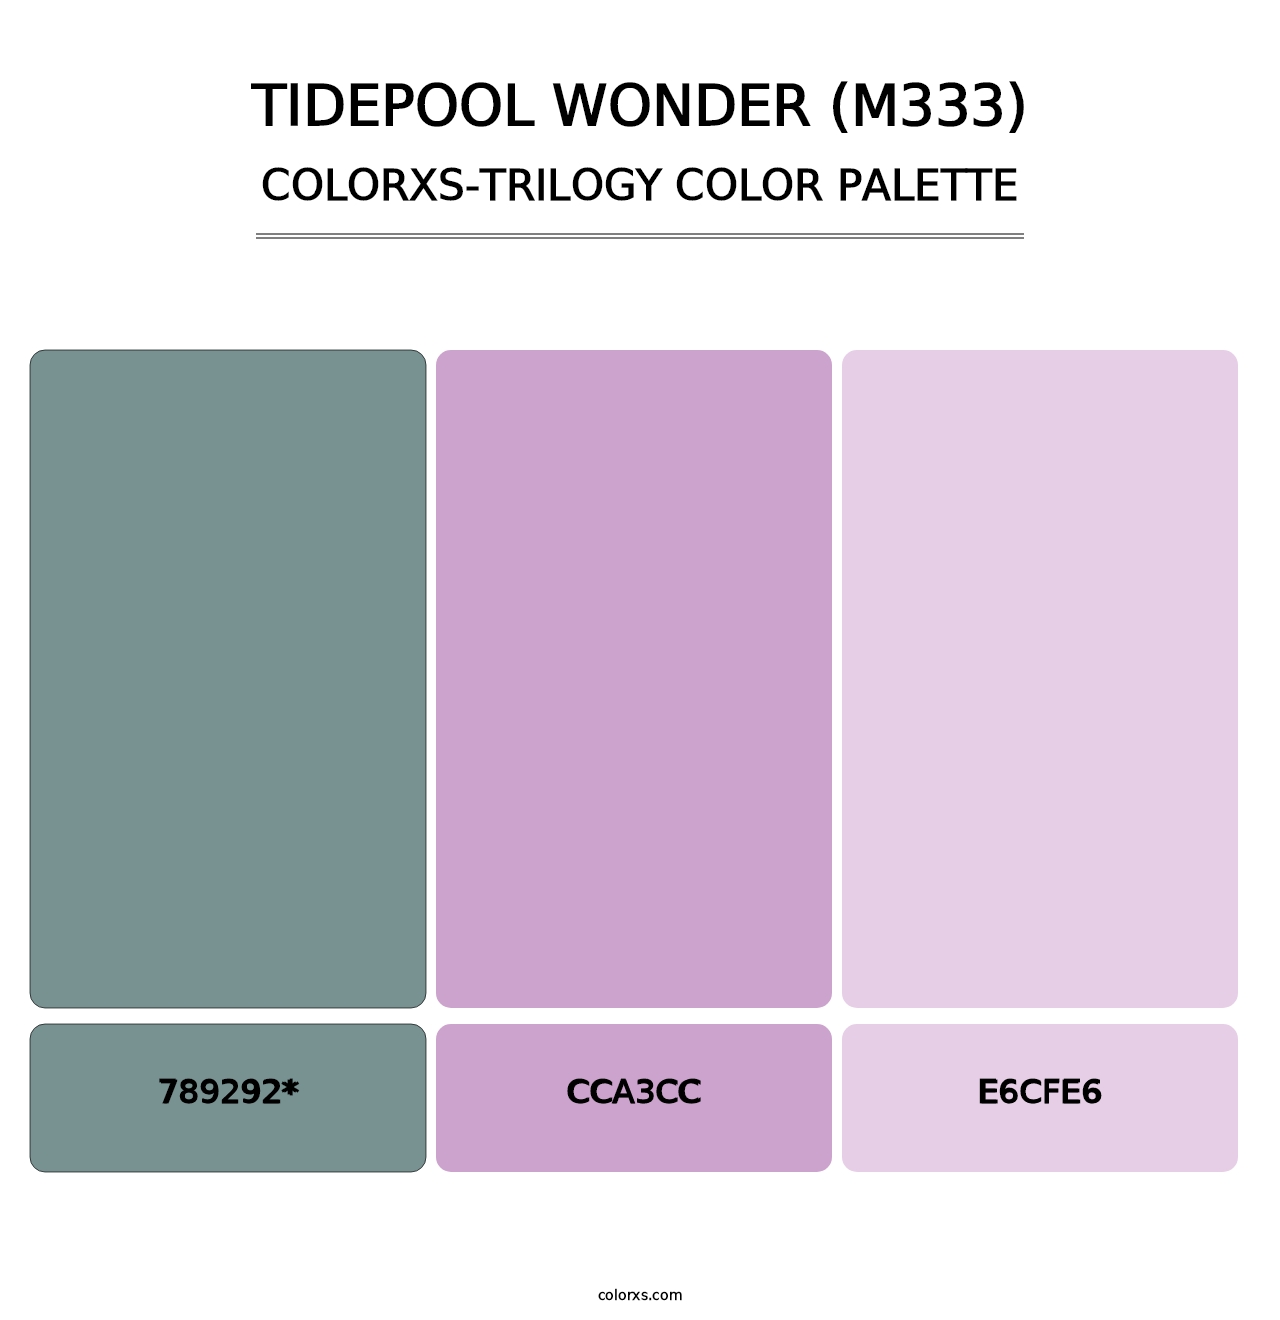 Tidepool Wonder (M333) - Colorxs Trilogy Palette